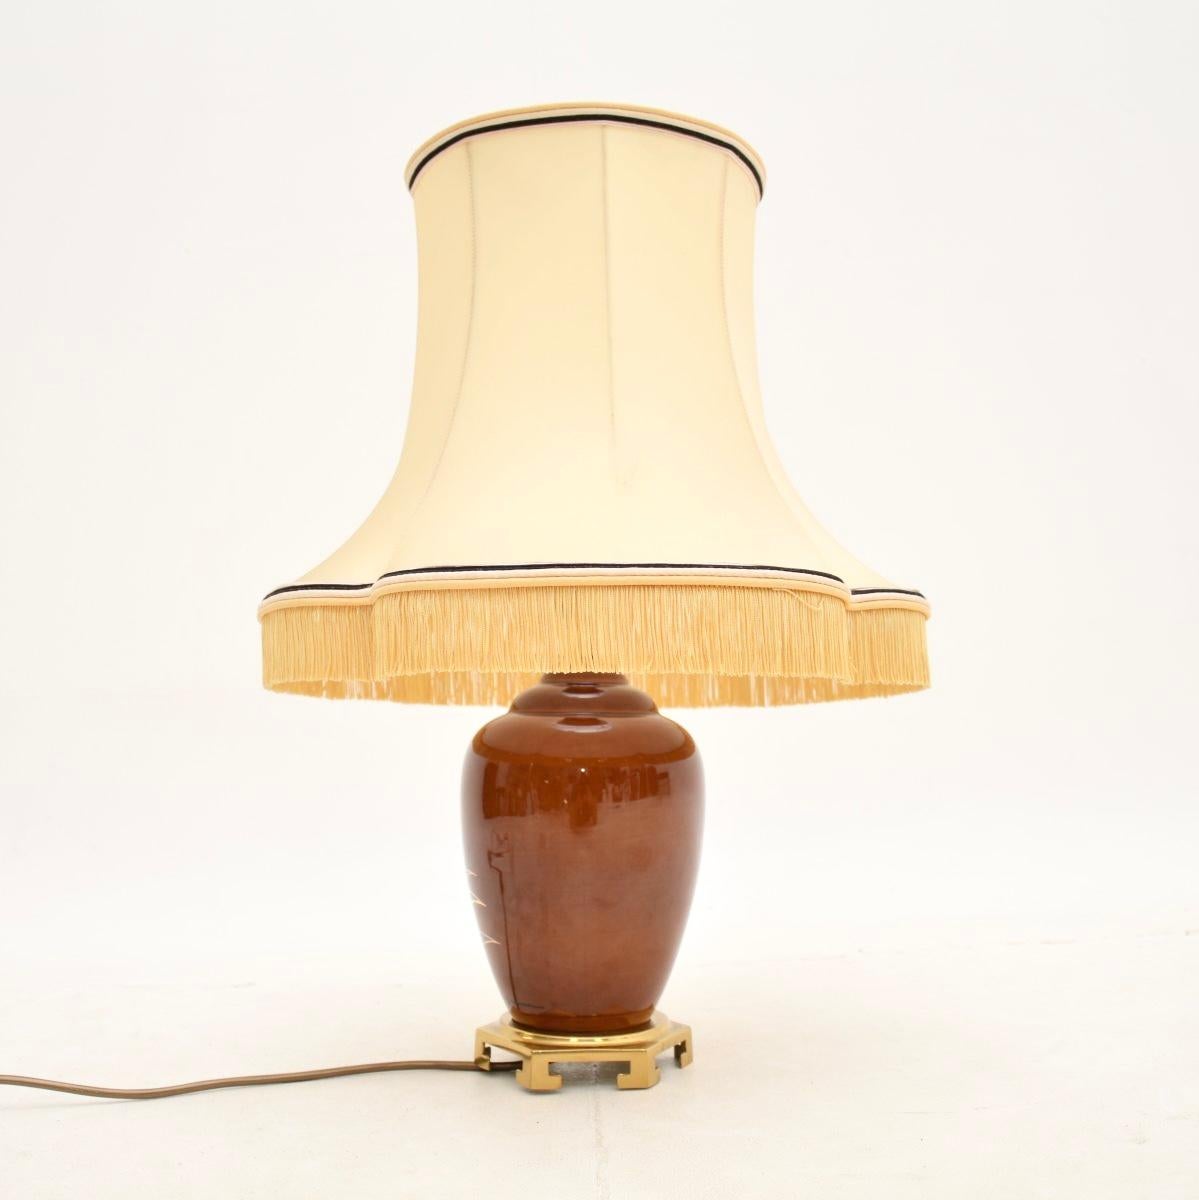 Eine absolut atemberaubende französische Vintage-Keramik-Tischlampe aus den 1970er Jahren.

Sie ist von hervorragender Qualität, hat eine schöne Größe und ist wunderschön verziert. Die Lampe ist handbemalt und vom Künstler signiert. Sie steht auf